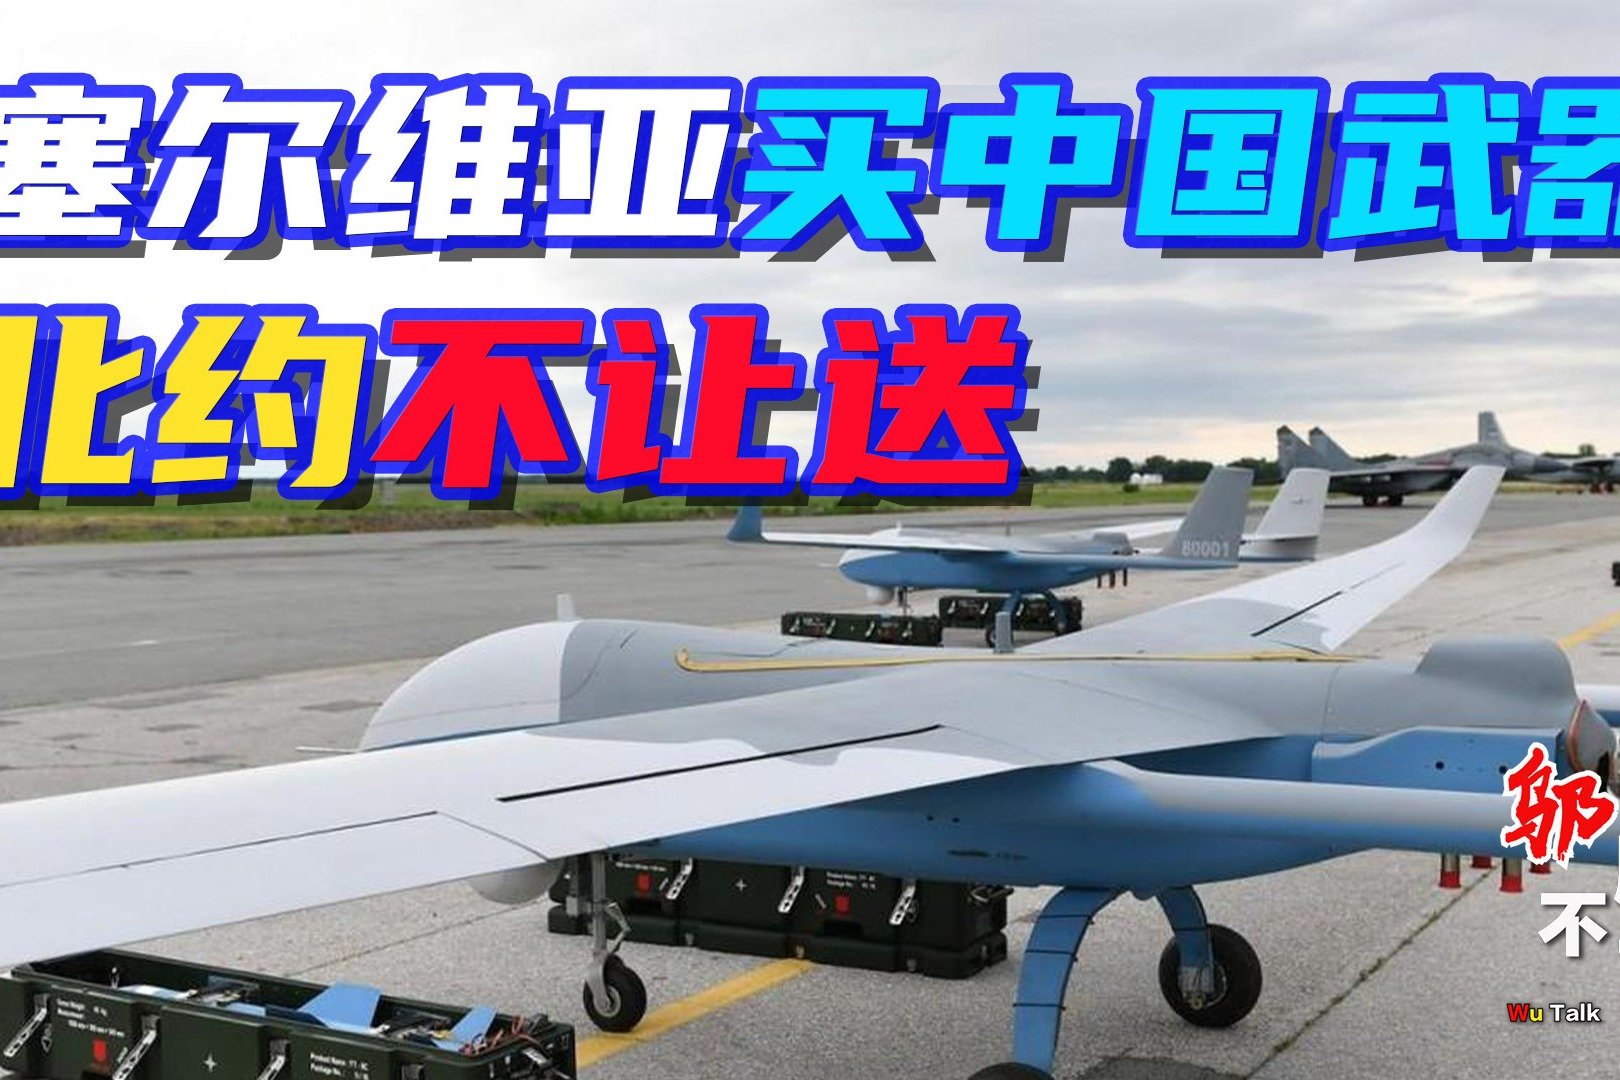 【中式武器】塞尔维亚展示中国出口的防空系统和无人机。 -6parkbbs.com